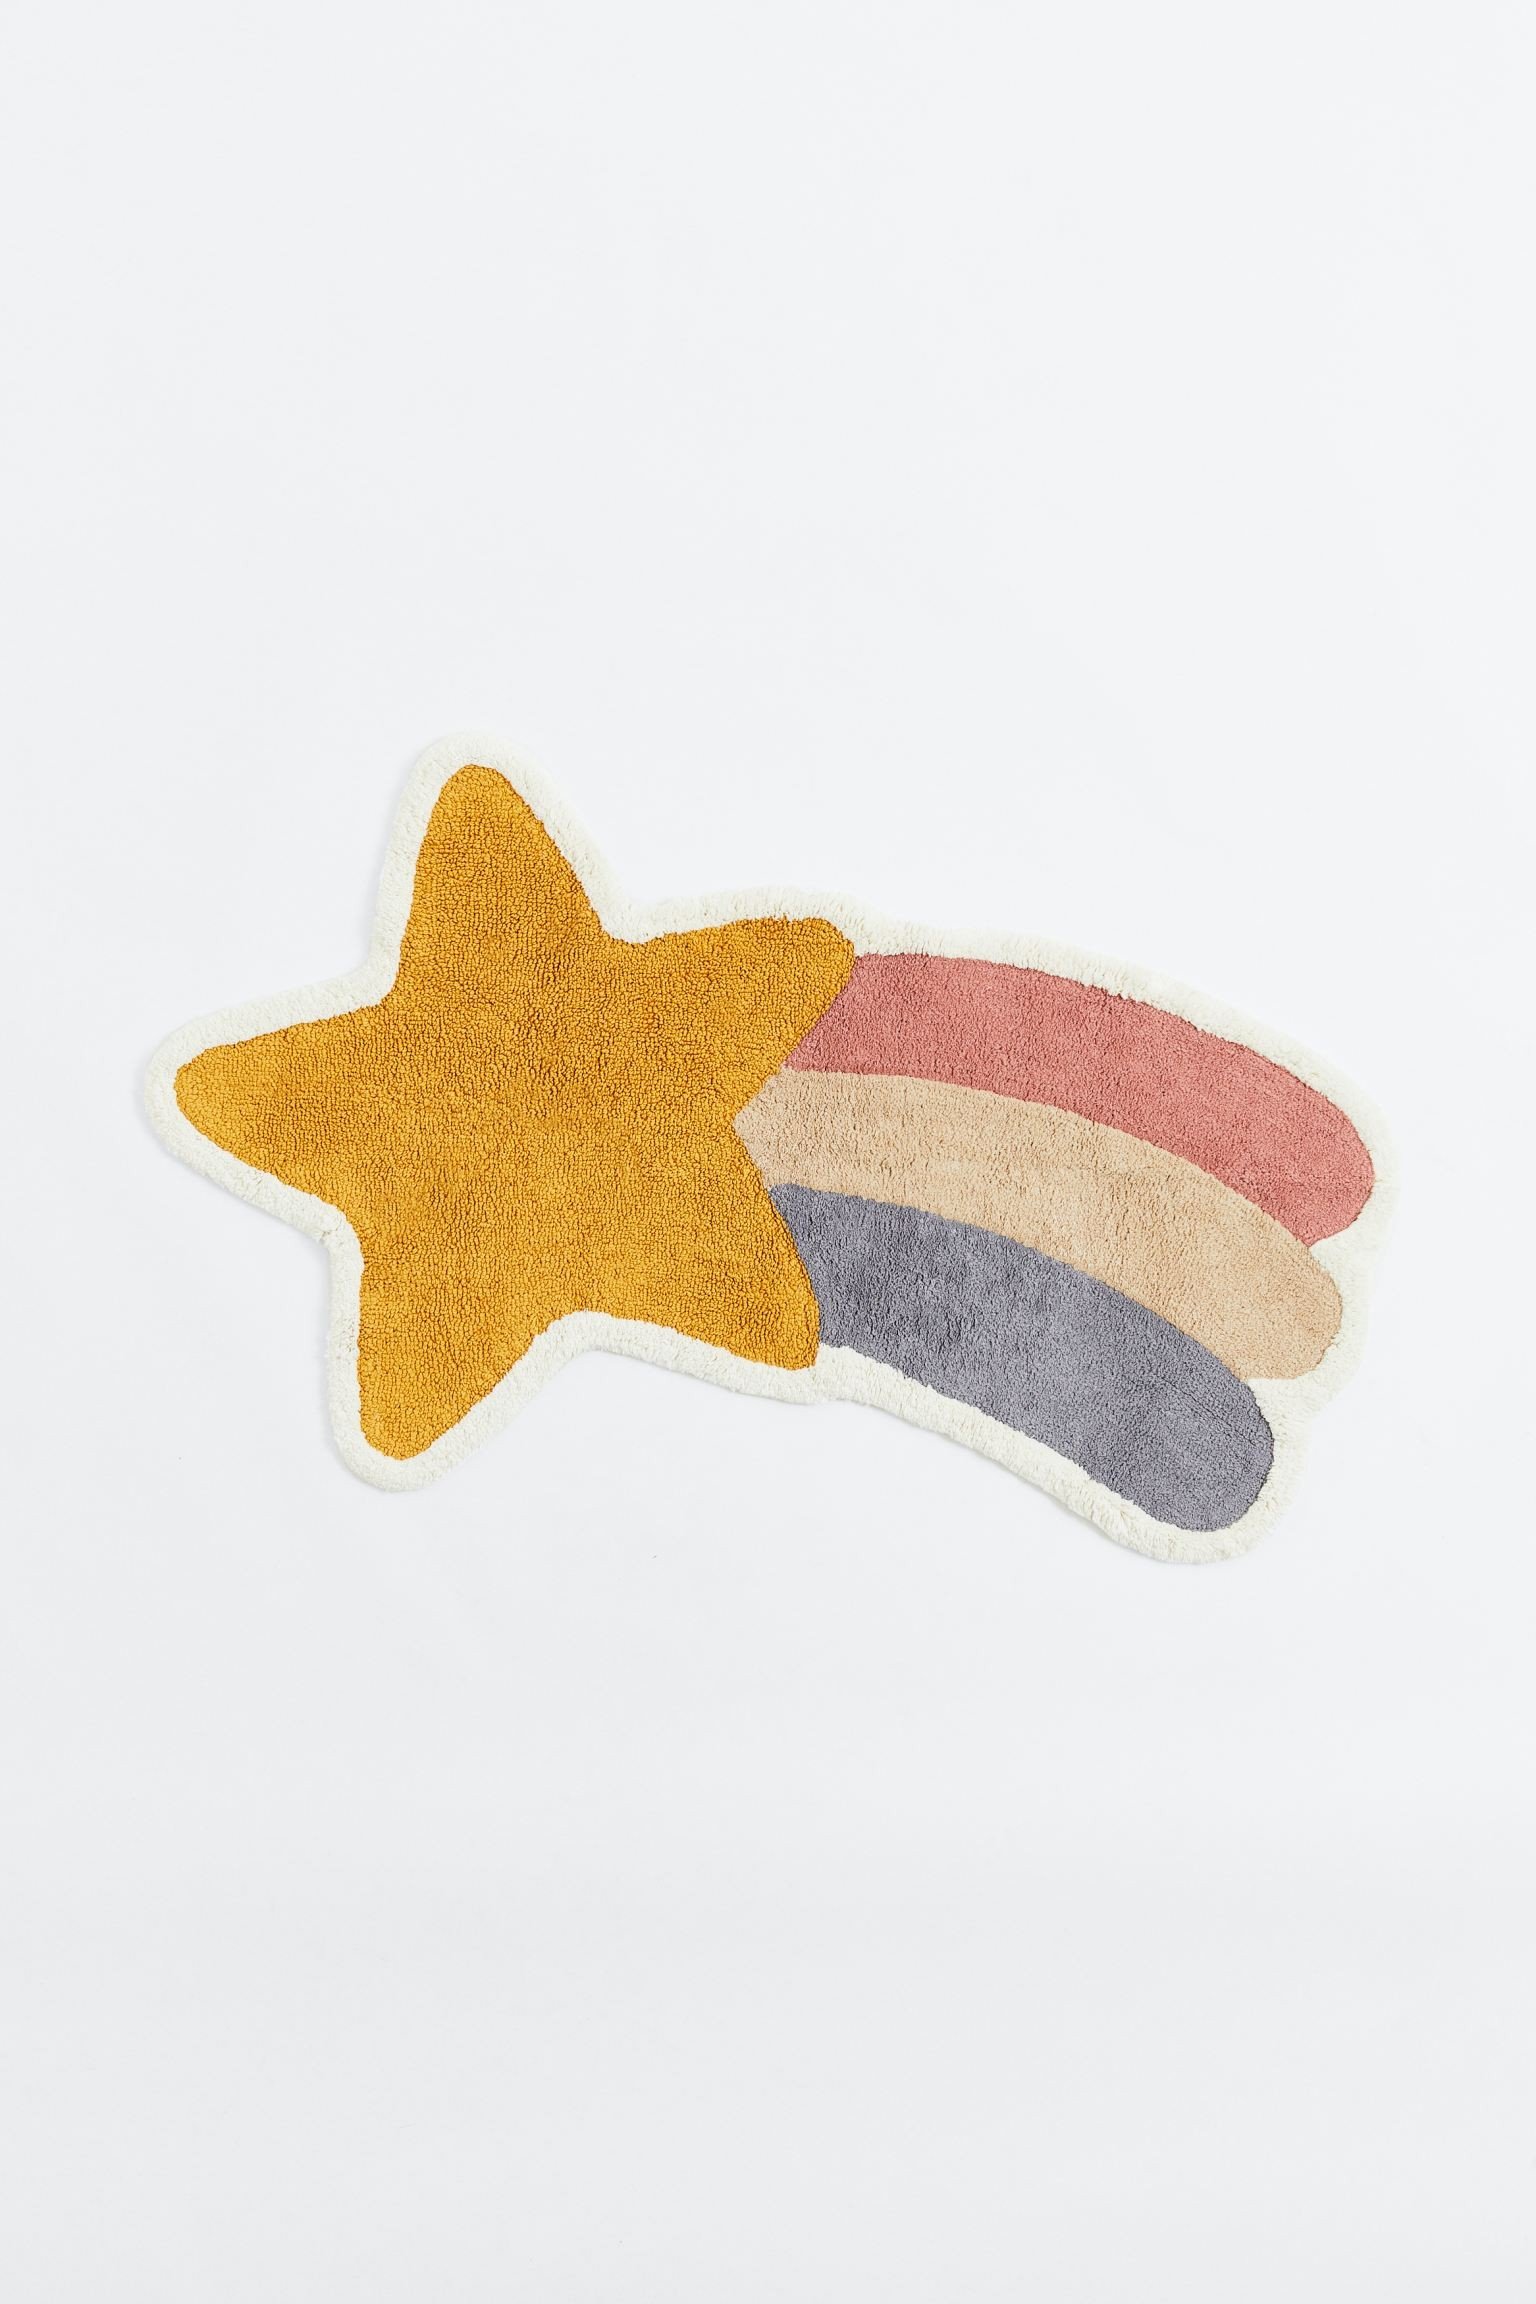 Пухнастий килим у формі зірки, Жовтий/зірковий, Різні розміри